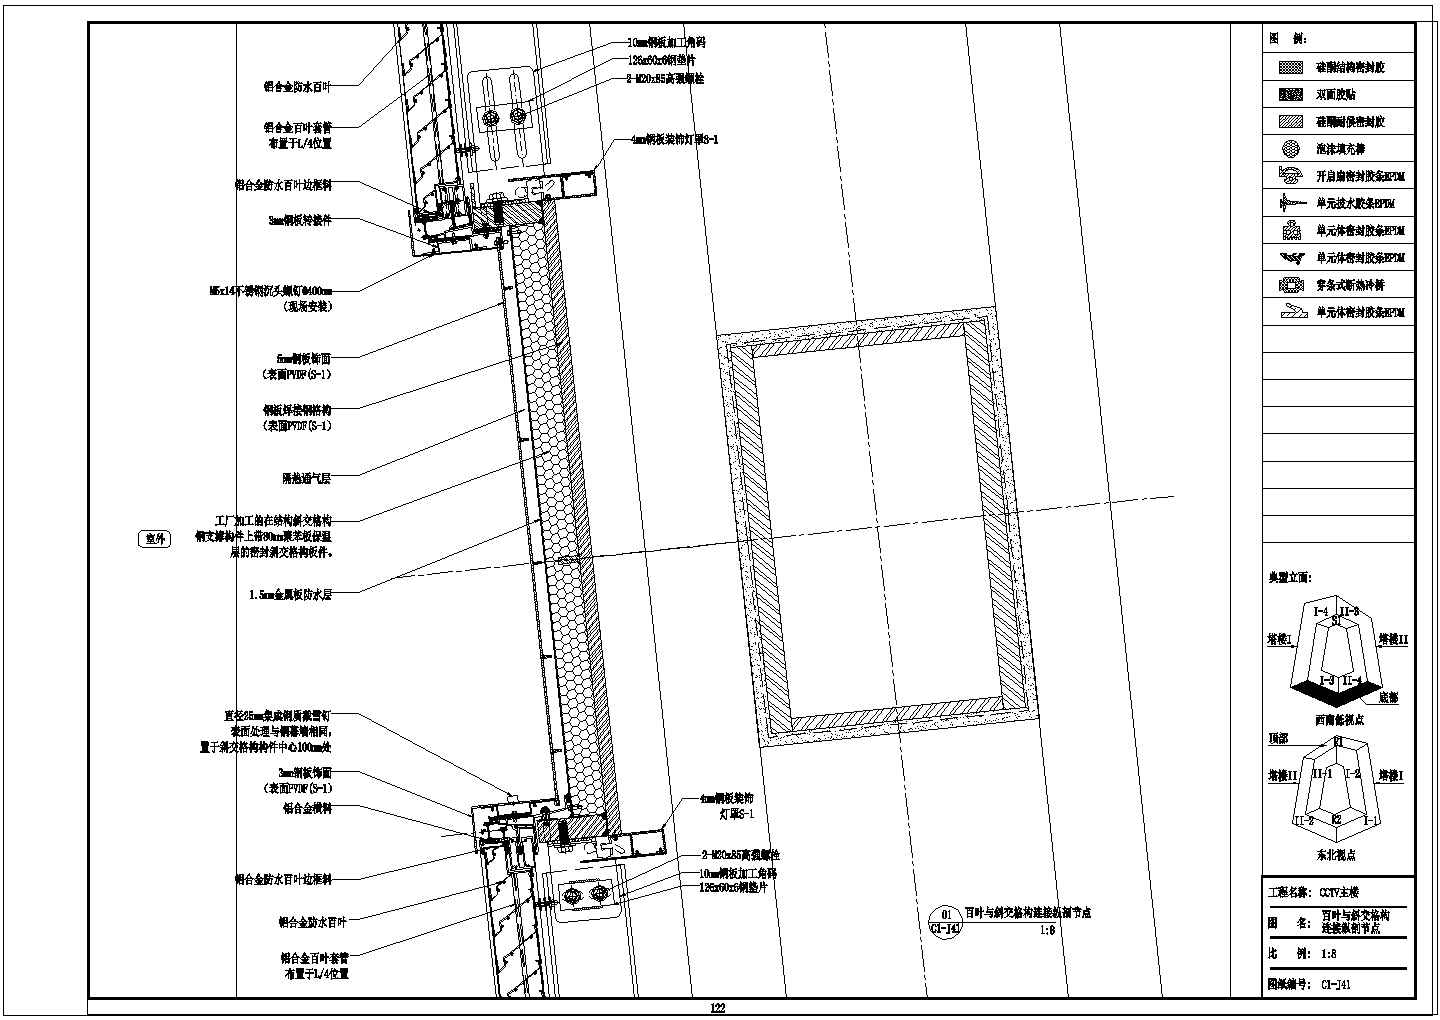 CCTV主楼节点图-百叶与斜交格构连接纵剖节点